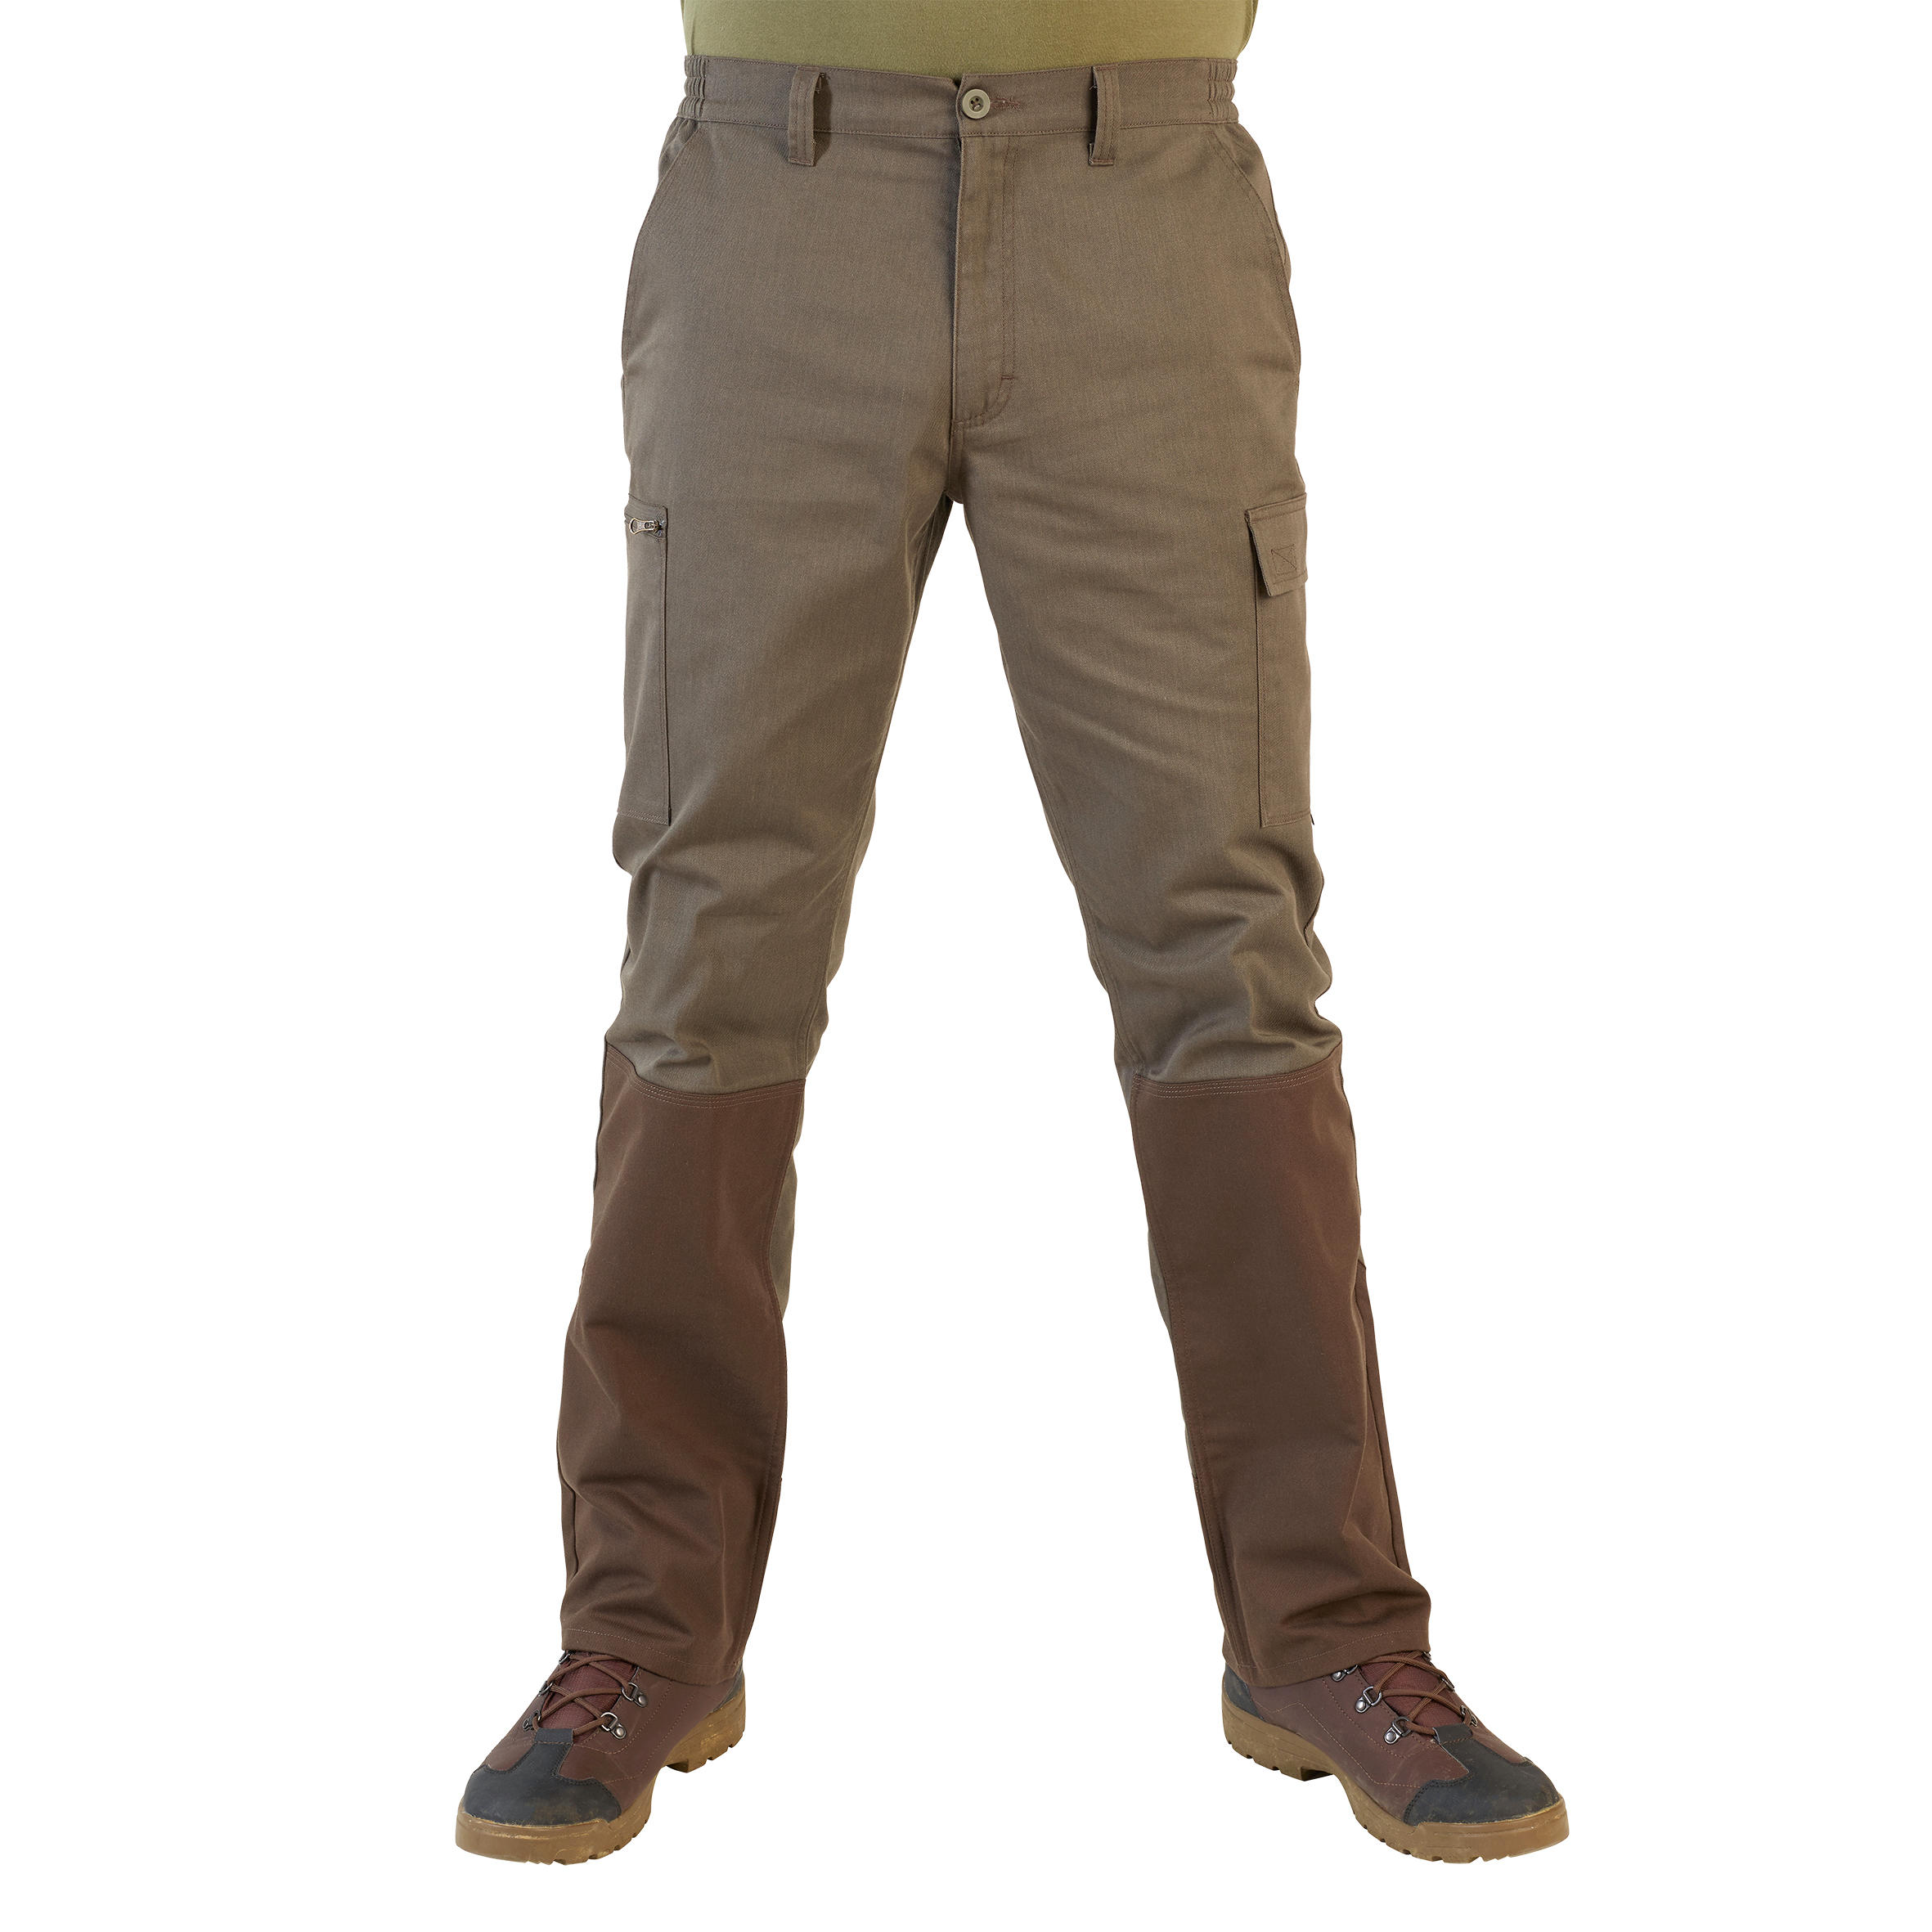 KHAKI Unisex Indian Army Pant Size 28  34